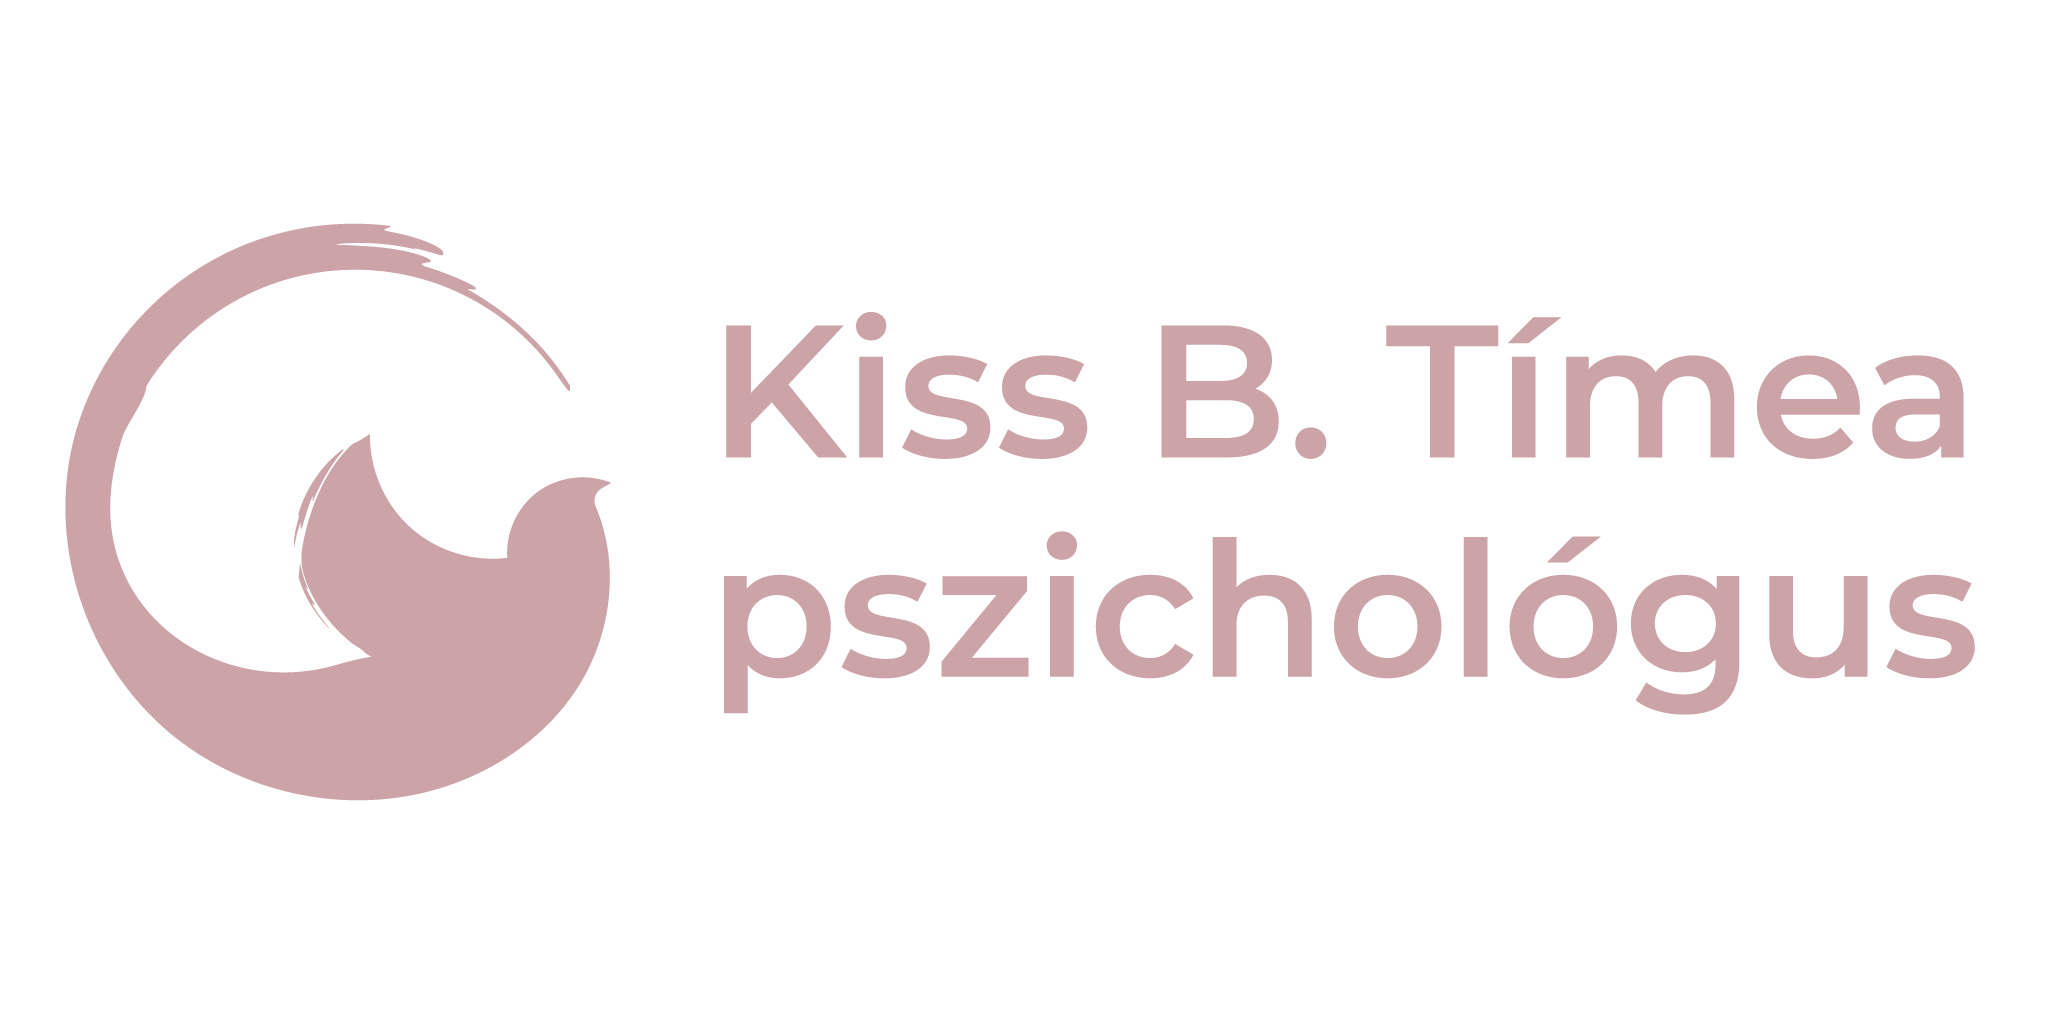 Kiss B. Tímea - Pszichológia, Szomatodráma, Ultrarövid terápiás konzultáció Debrecenben